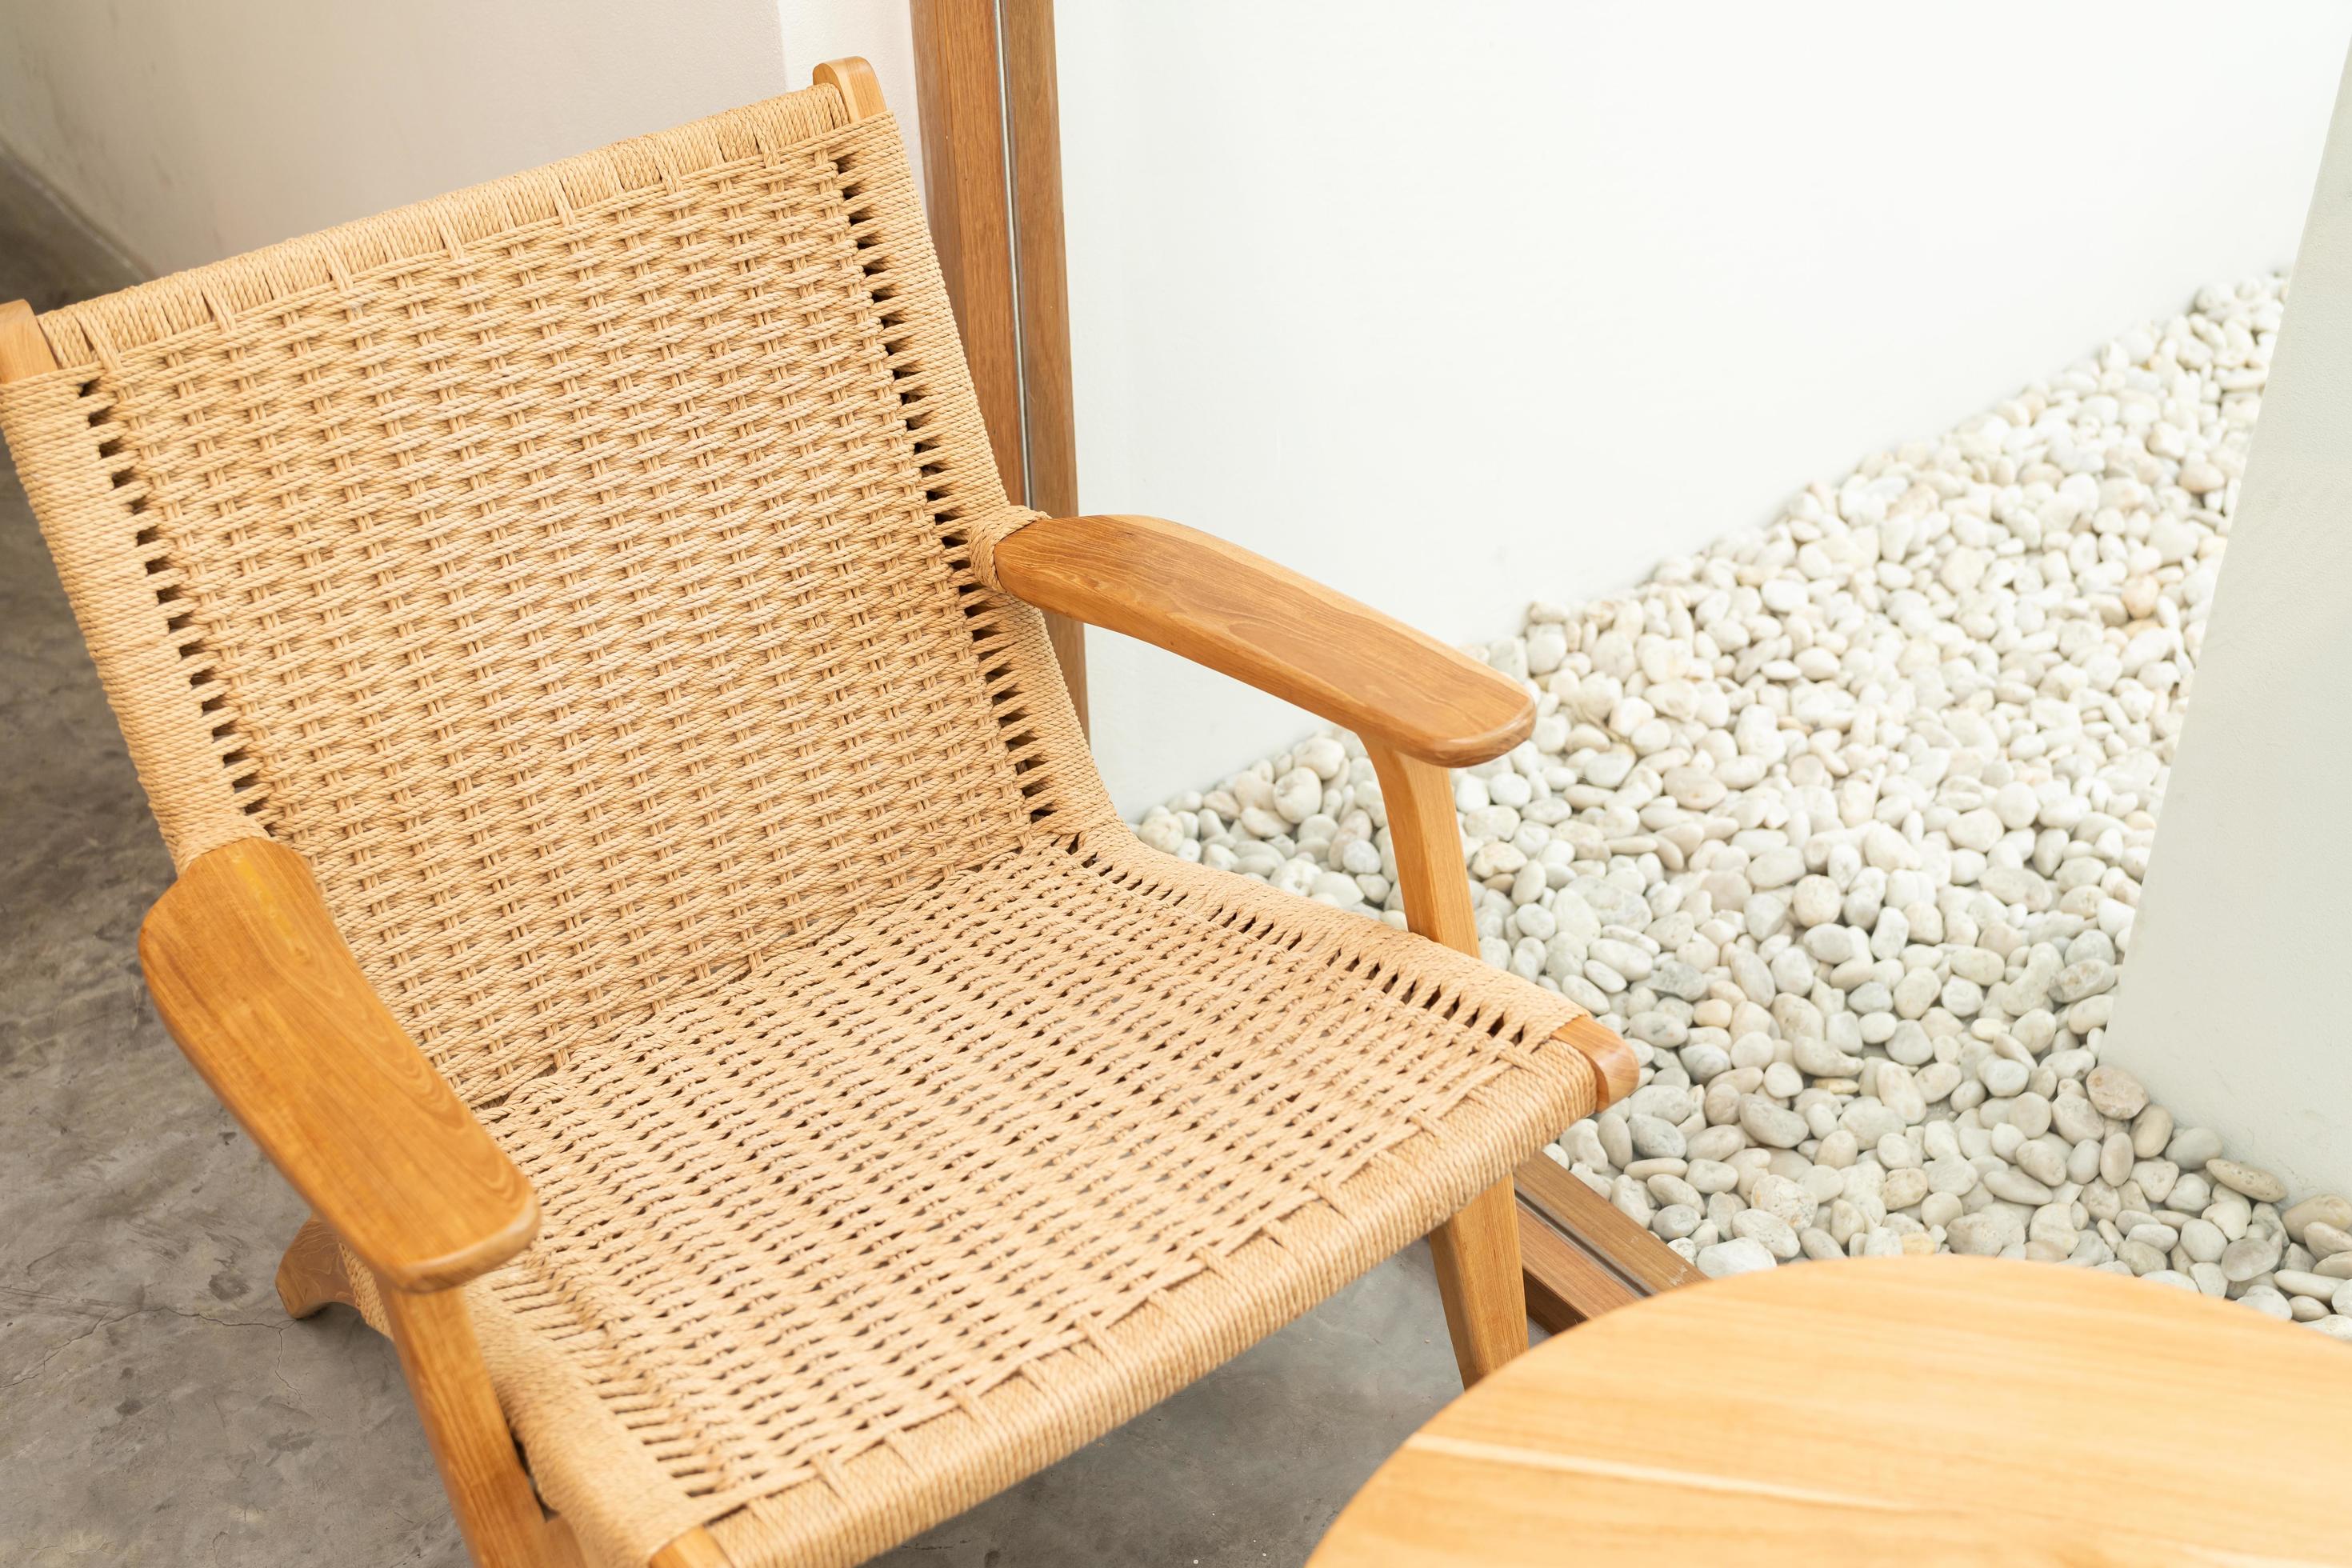 bak geest Corroderen neutraal concept van woonkamer interieur met design houten fauteuil.  close-up van houten stoel met rotan, mooi eikenhouten textuuroppervlak,  rotanpatroon. 8001090 Stockfoto